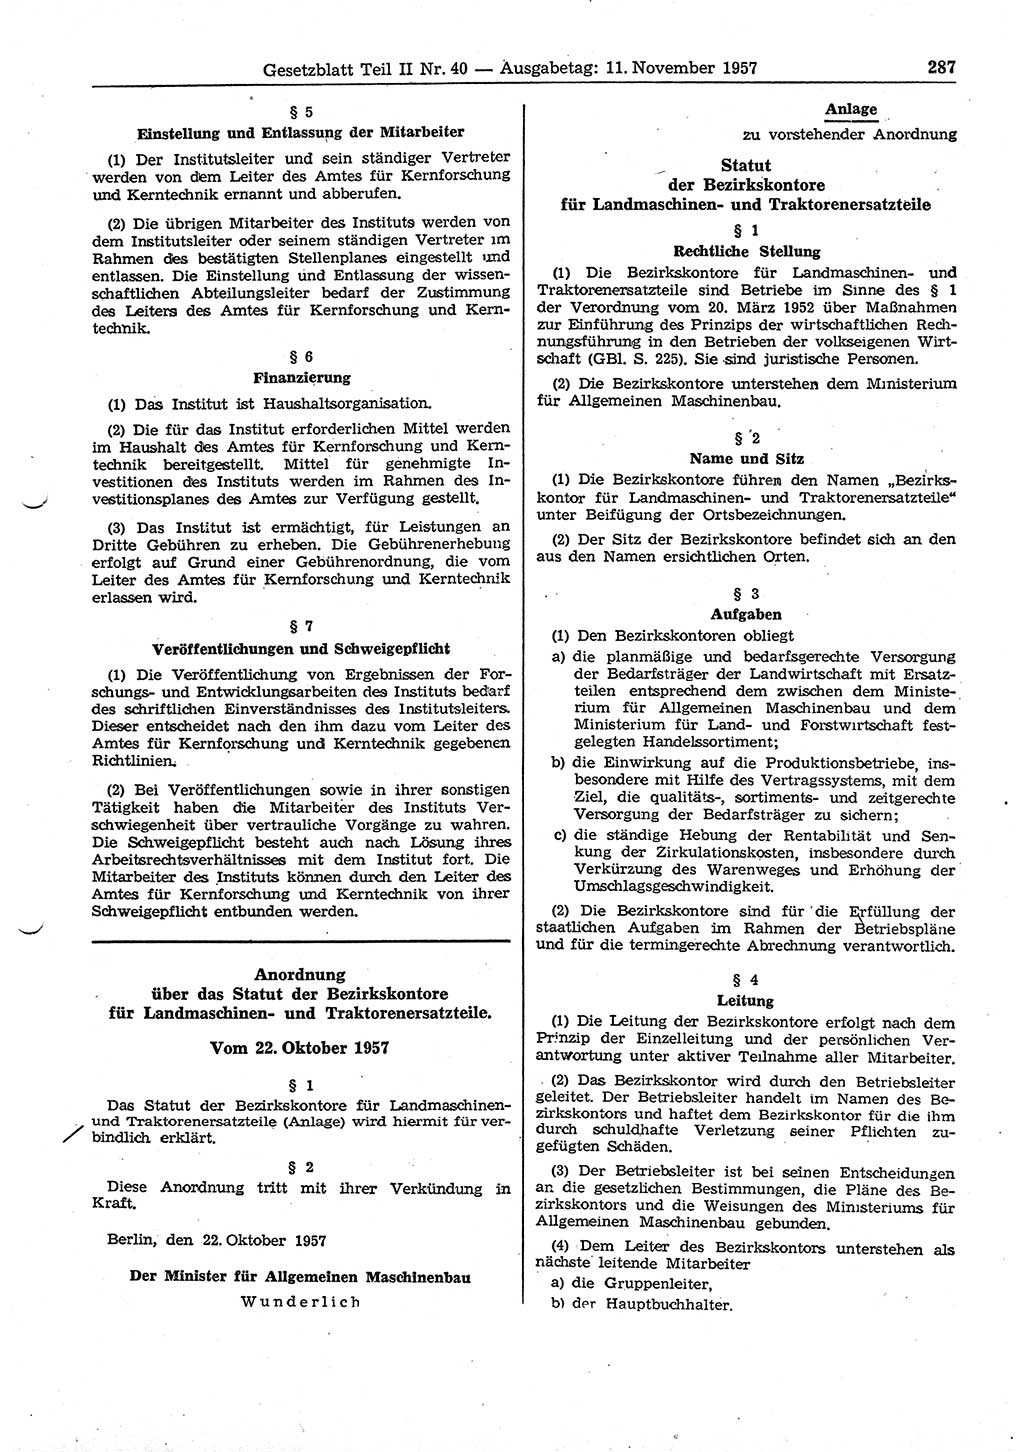 Gesetzblatt (GBl.) der Deutschen Demokratischen Republik (DDR) Teil ⅠⅠ 1957, Seite 287 (GBl. DDR ⅠⅠ 1957, S. 287)